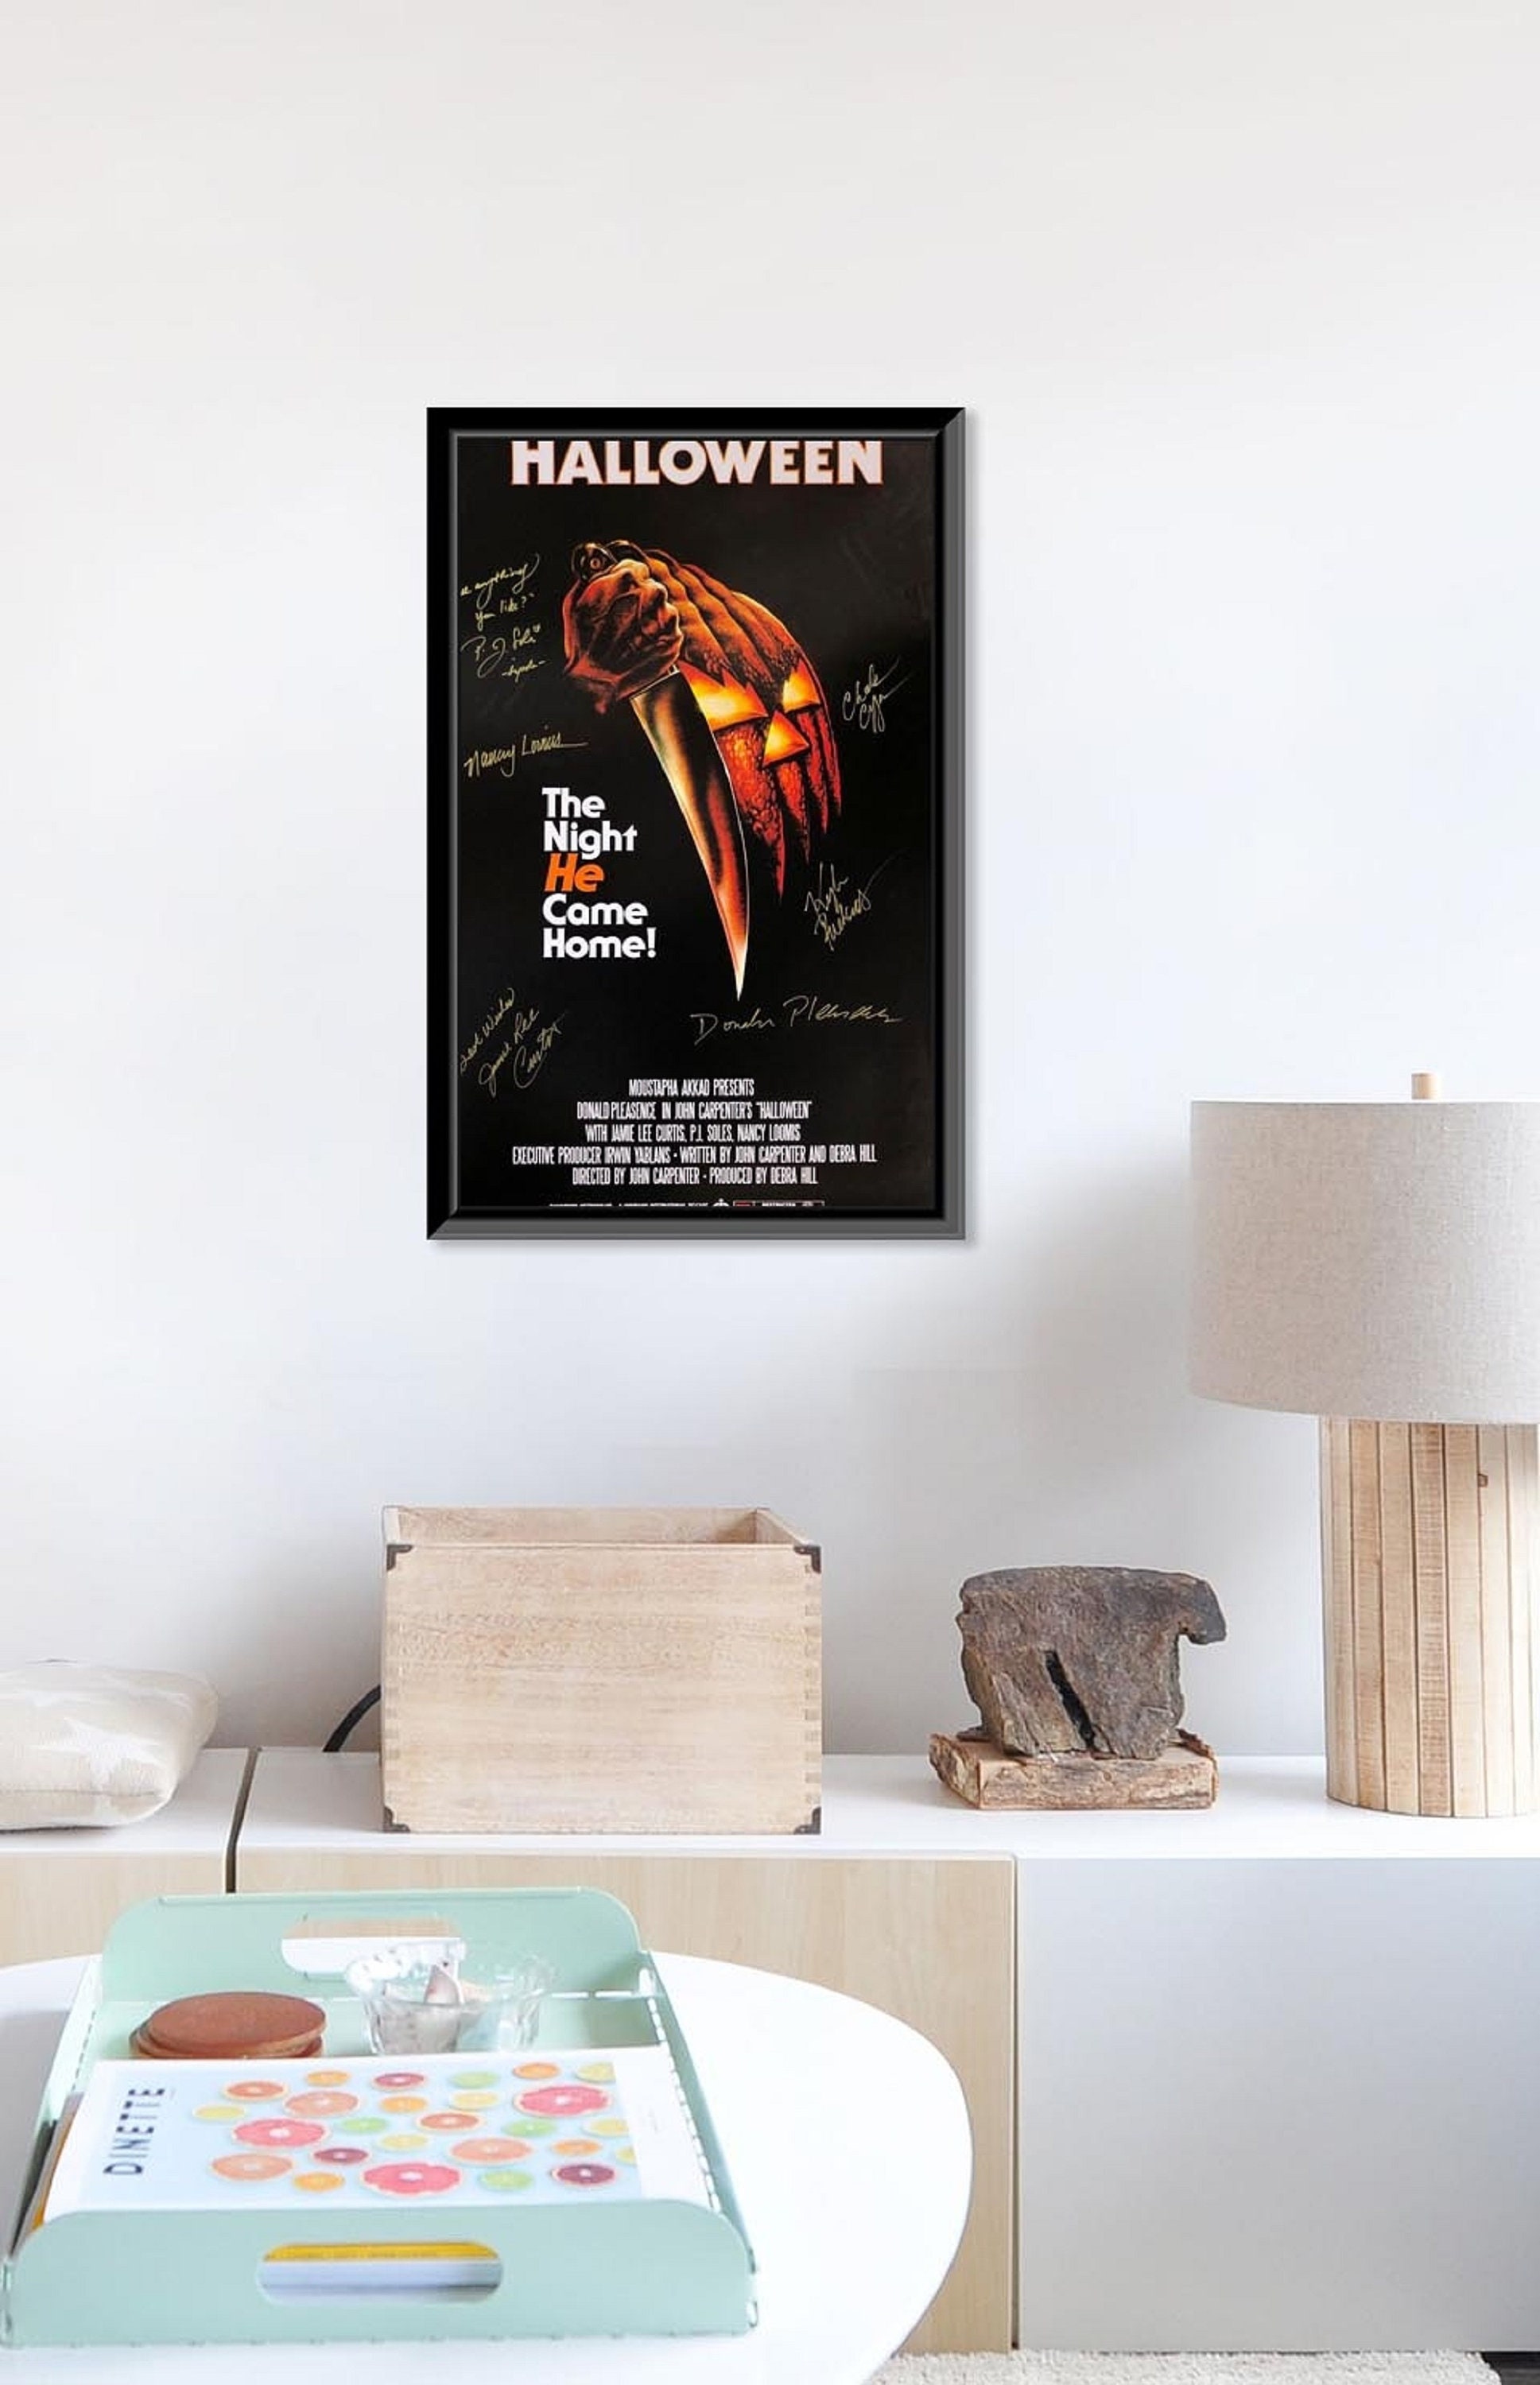 John Carpenter Halloween Movie Signed Poster - CharityStars